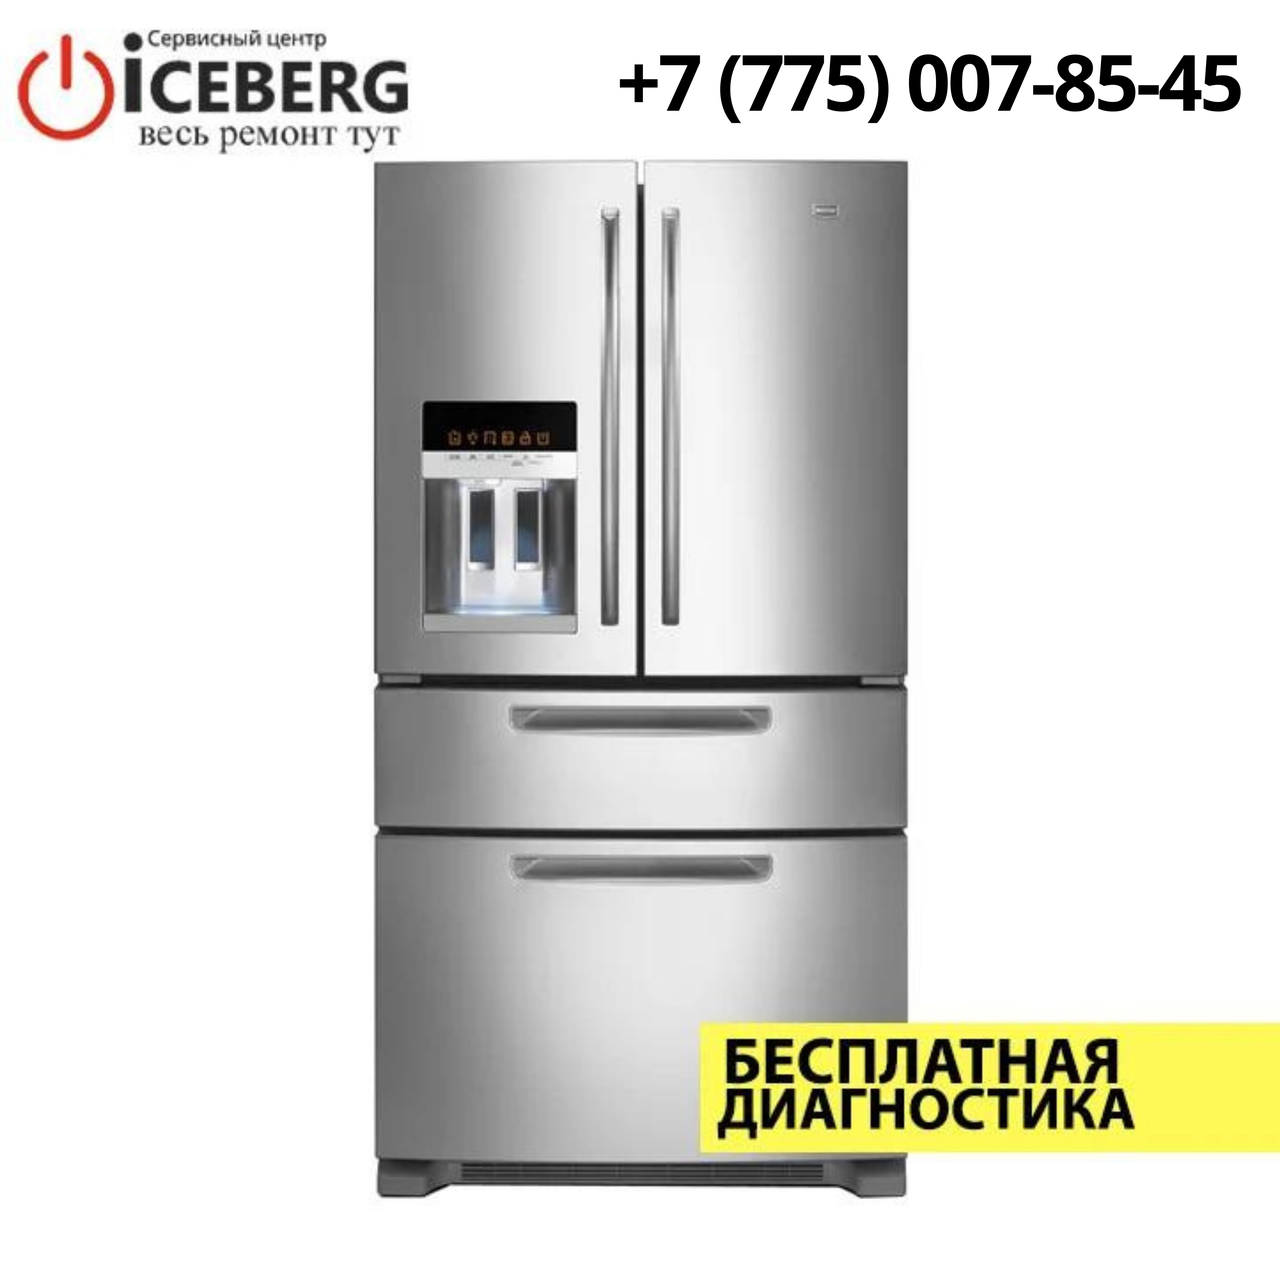 Ремонт холодильников Maytag в Алматы